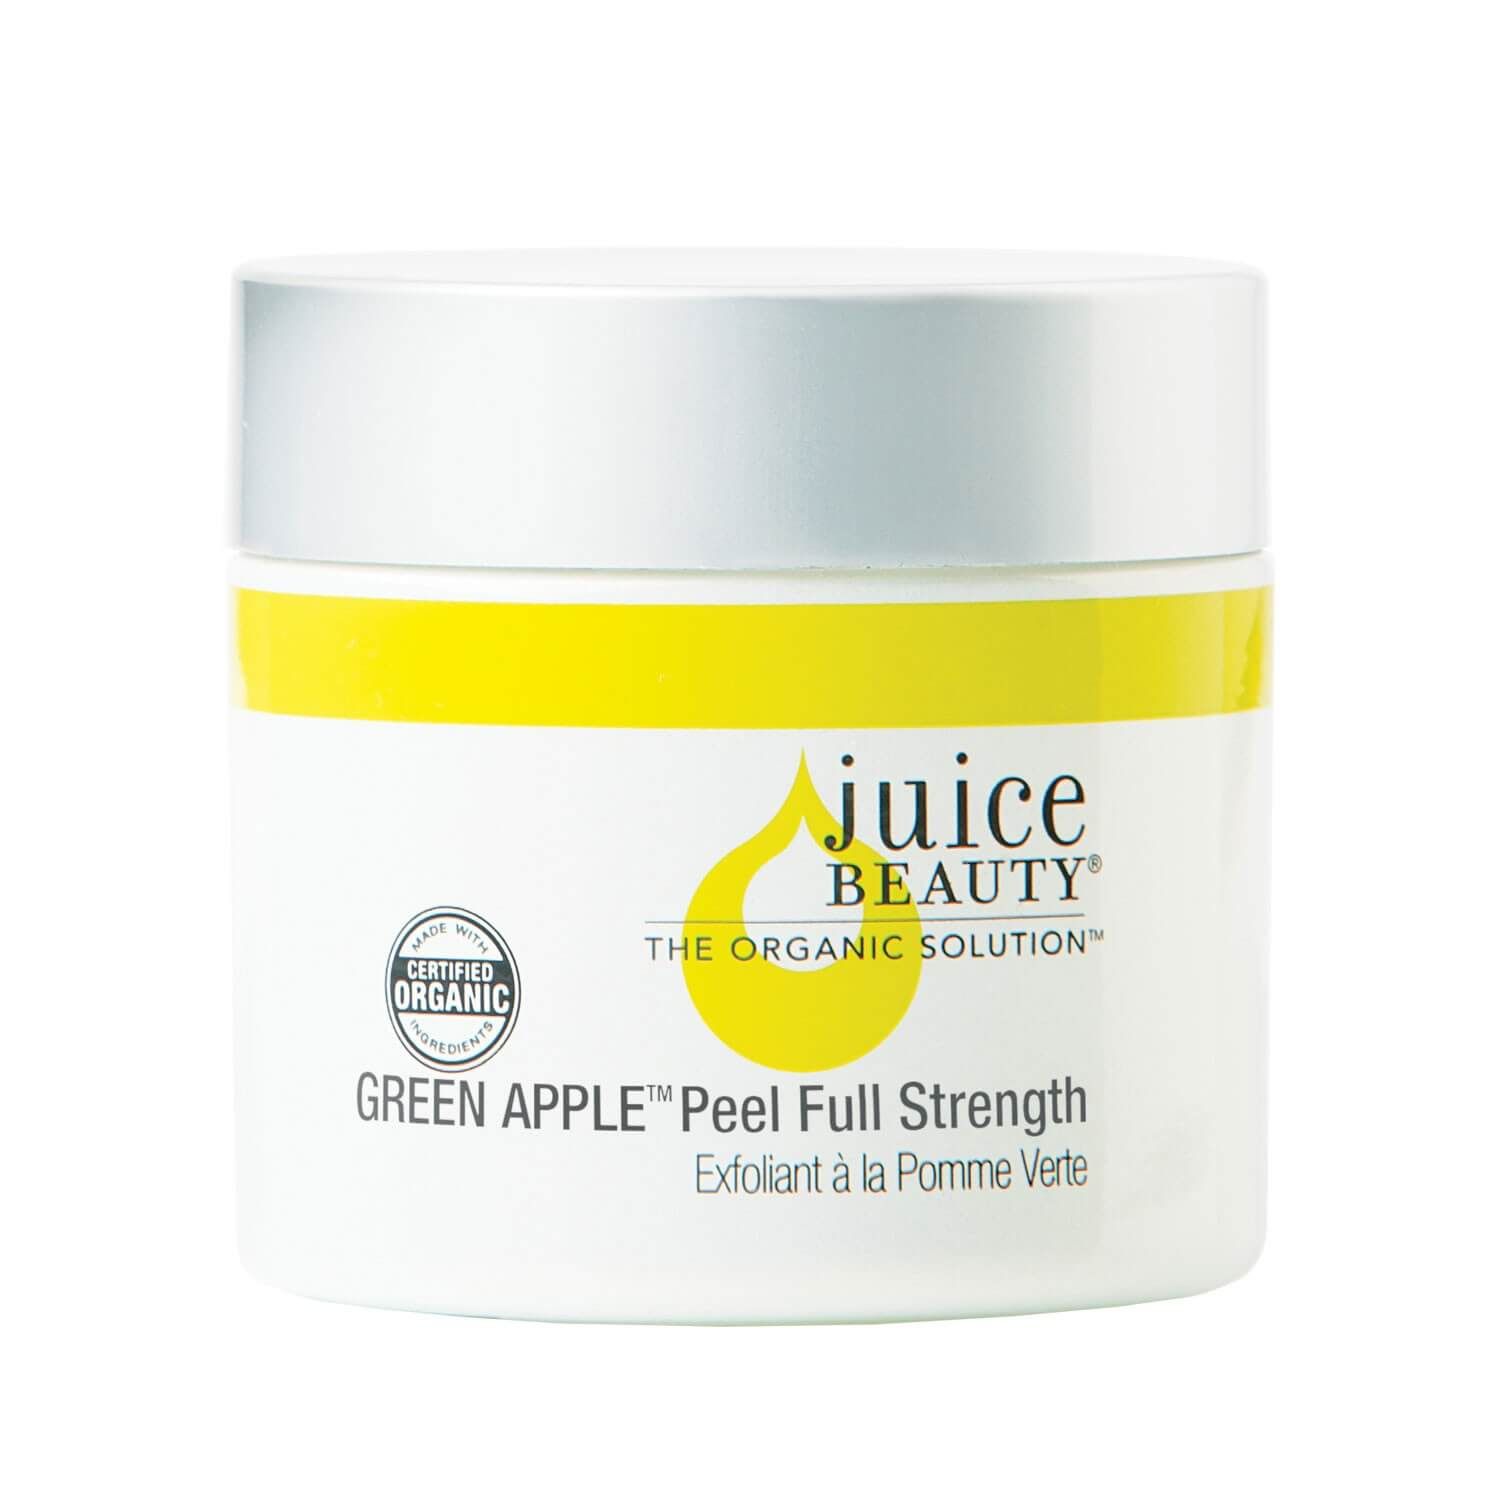 Juice Beauty Green Apple Peel 